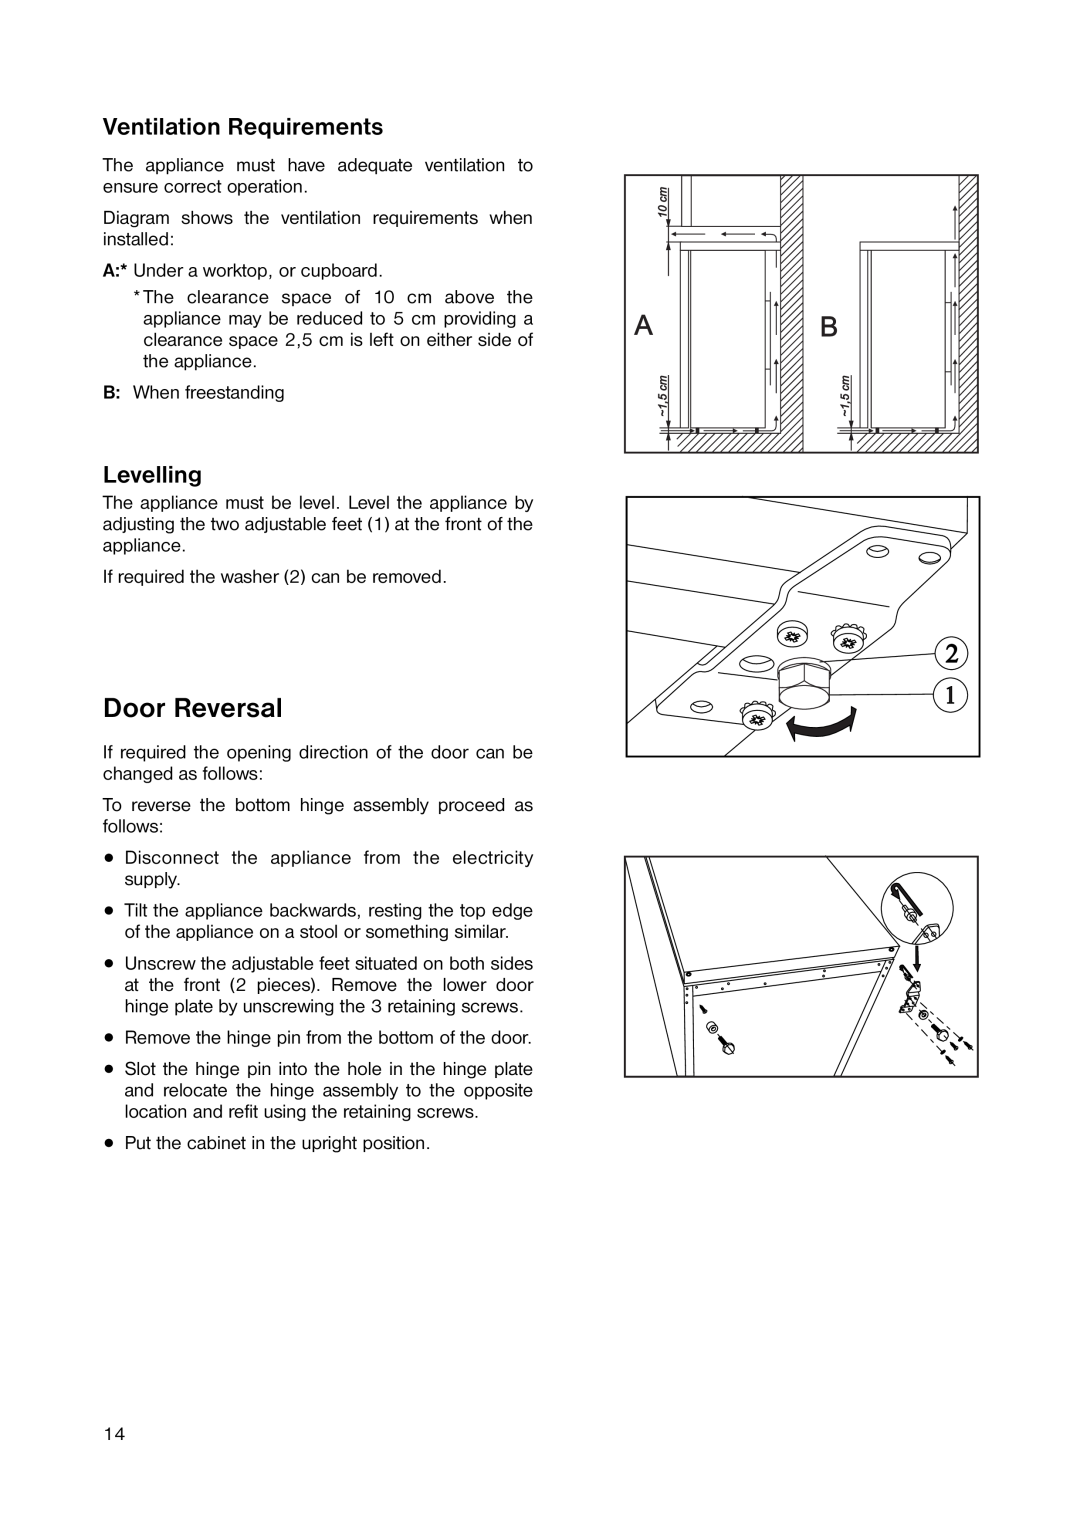 Zanussi ZERT 6546 manual Door Reversal, Ventilation Requirements, Levelling 